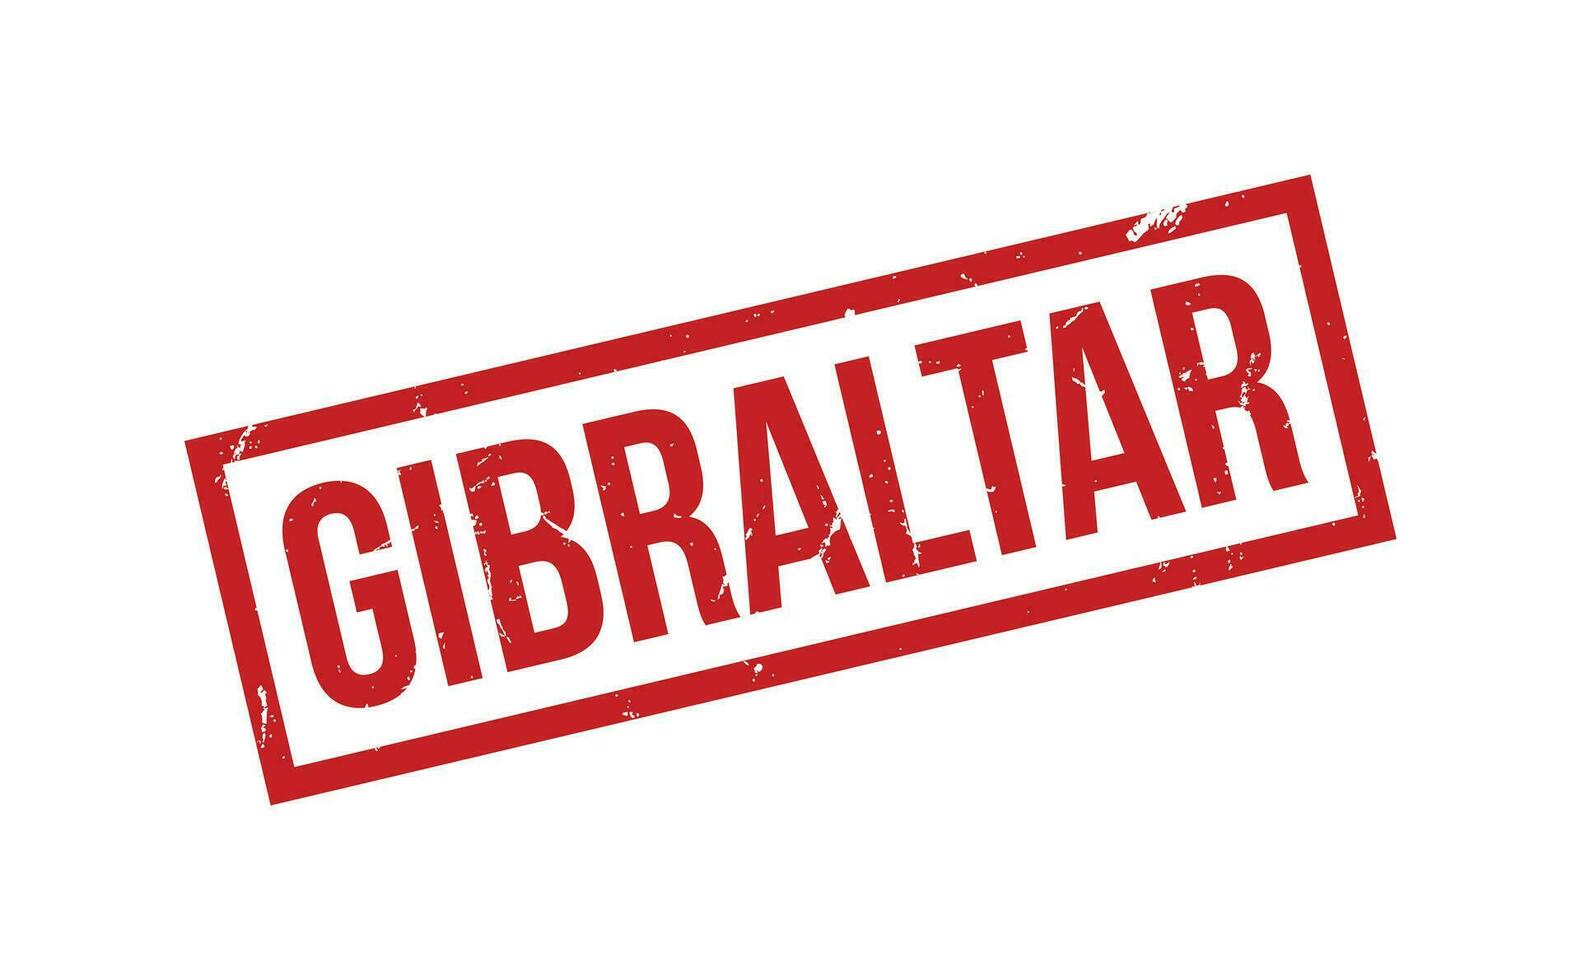 Gibraltar borracha carimbo foca vetor